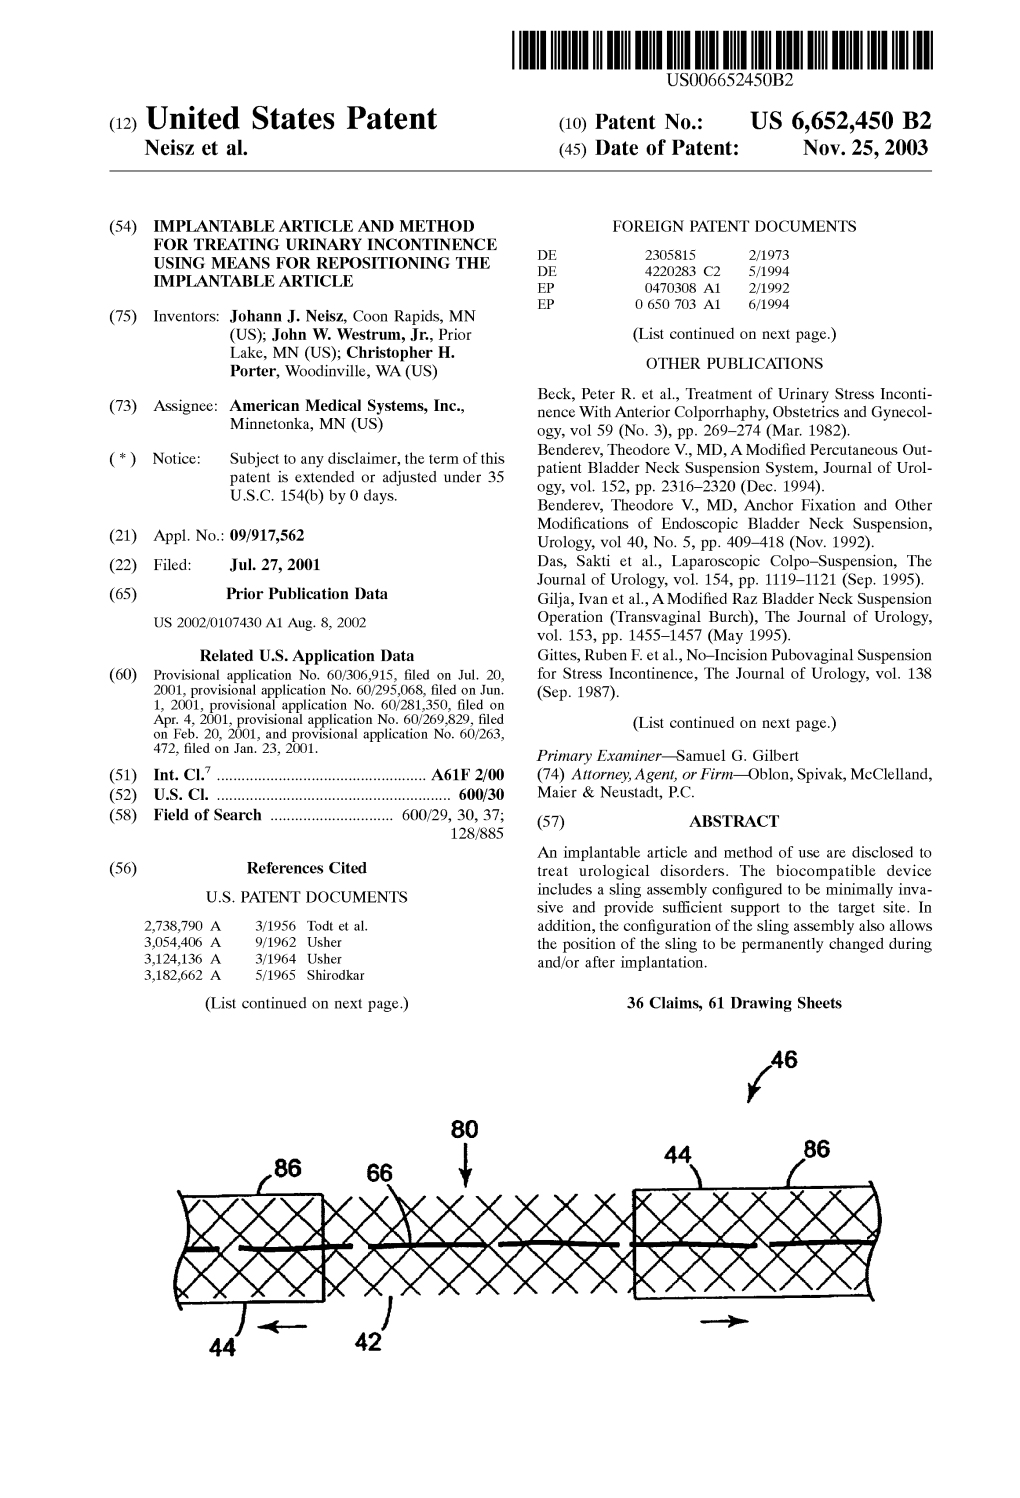 (12) United States Patent (10) Patent No.: US 6,652,450 B2 Neisz Et Al